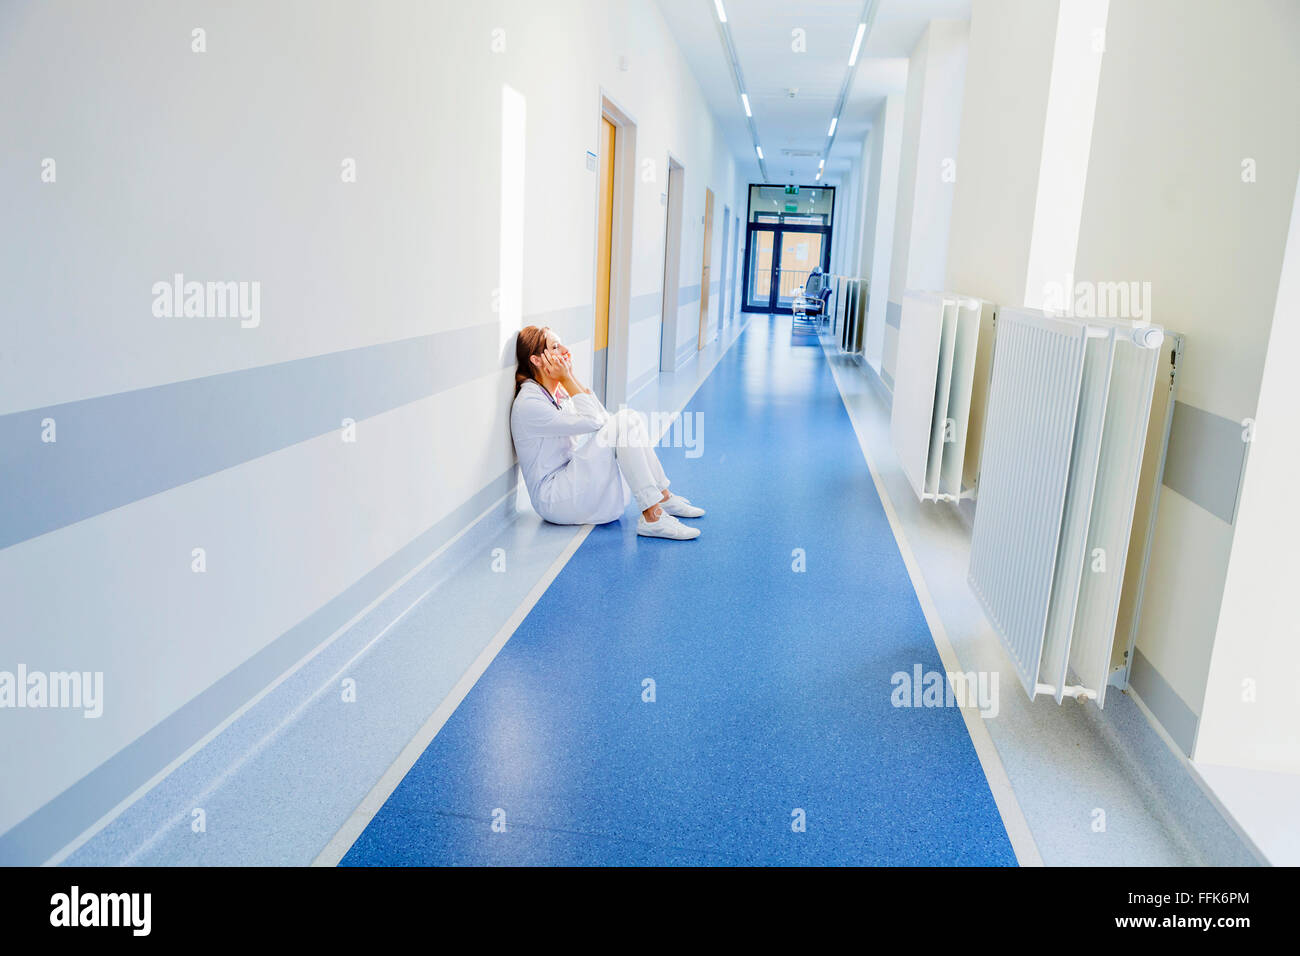 Overworked healthcare worker sitting on floor in hospital corridor Stock Photo